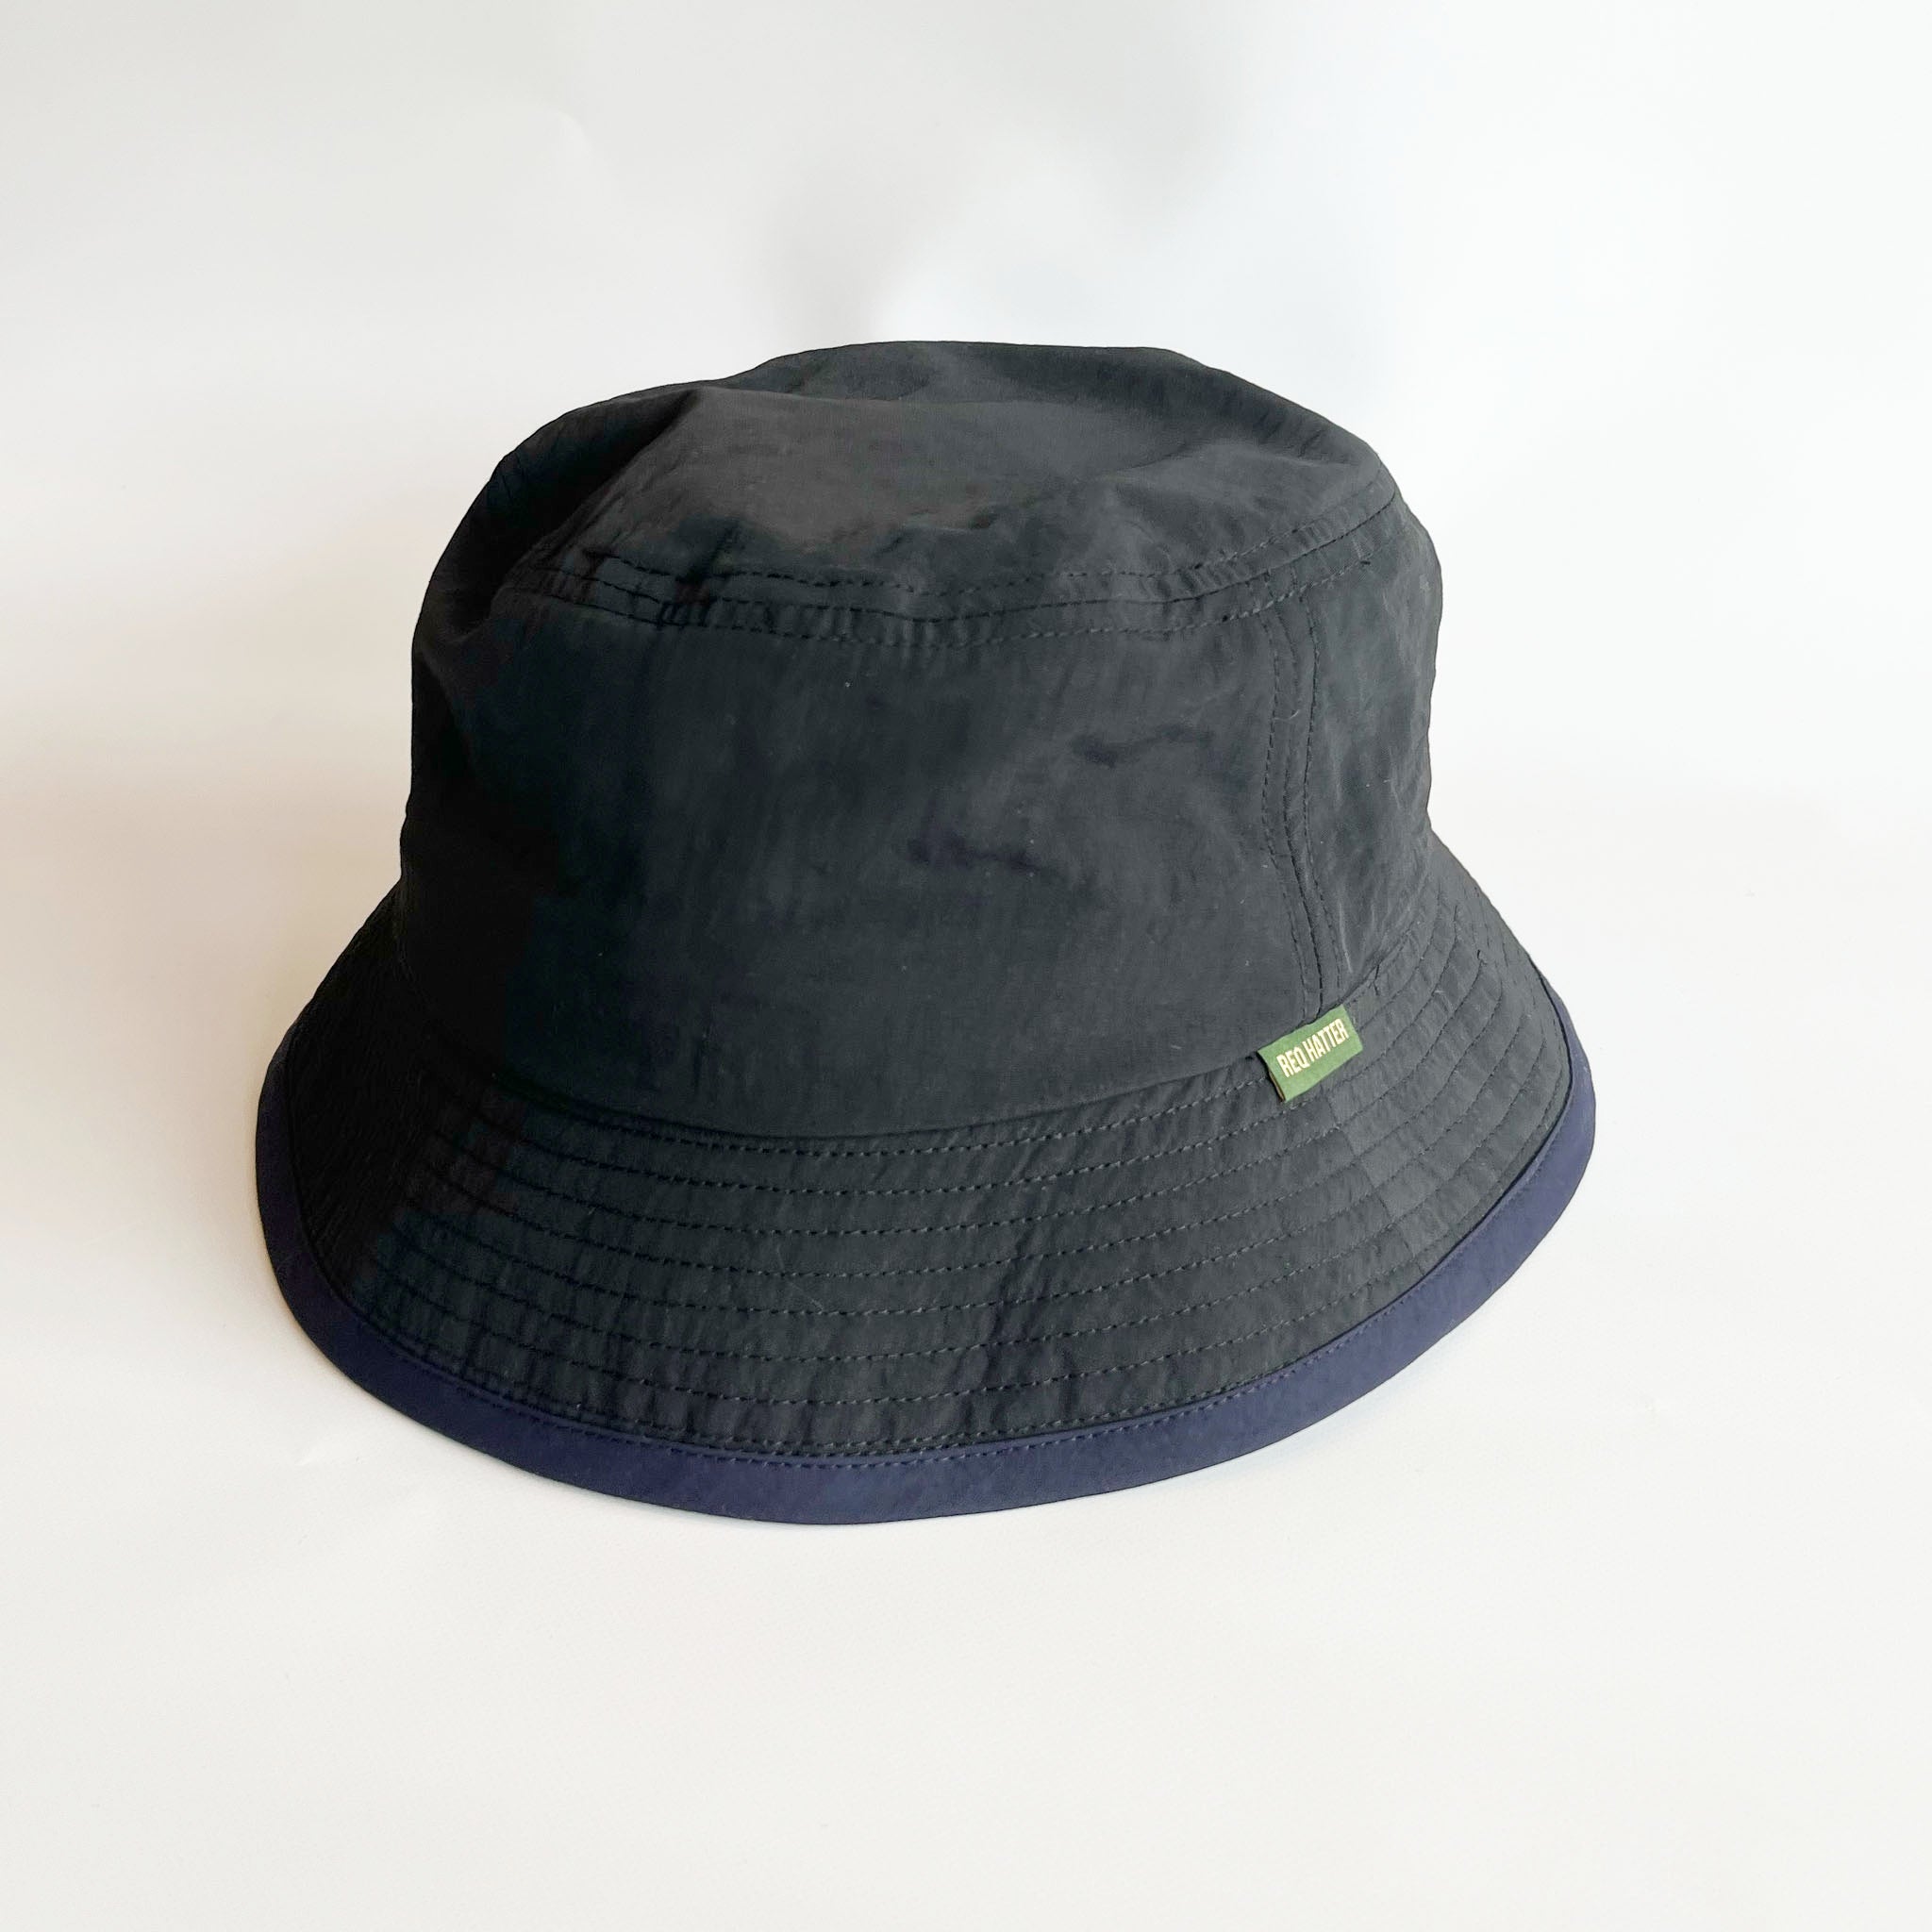 尼龙渔夫帽– 帽子通販-レックハッターストア